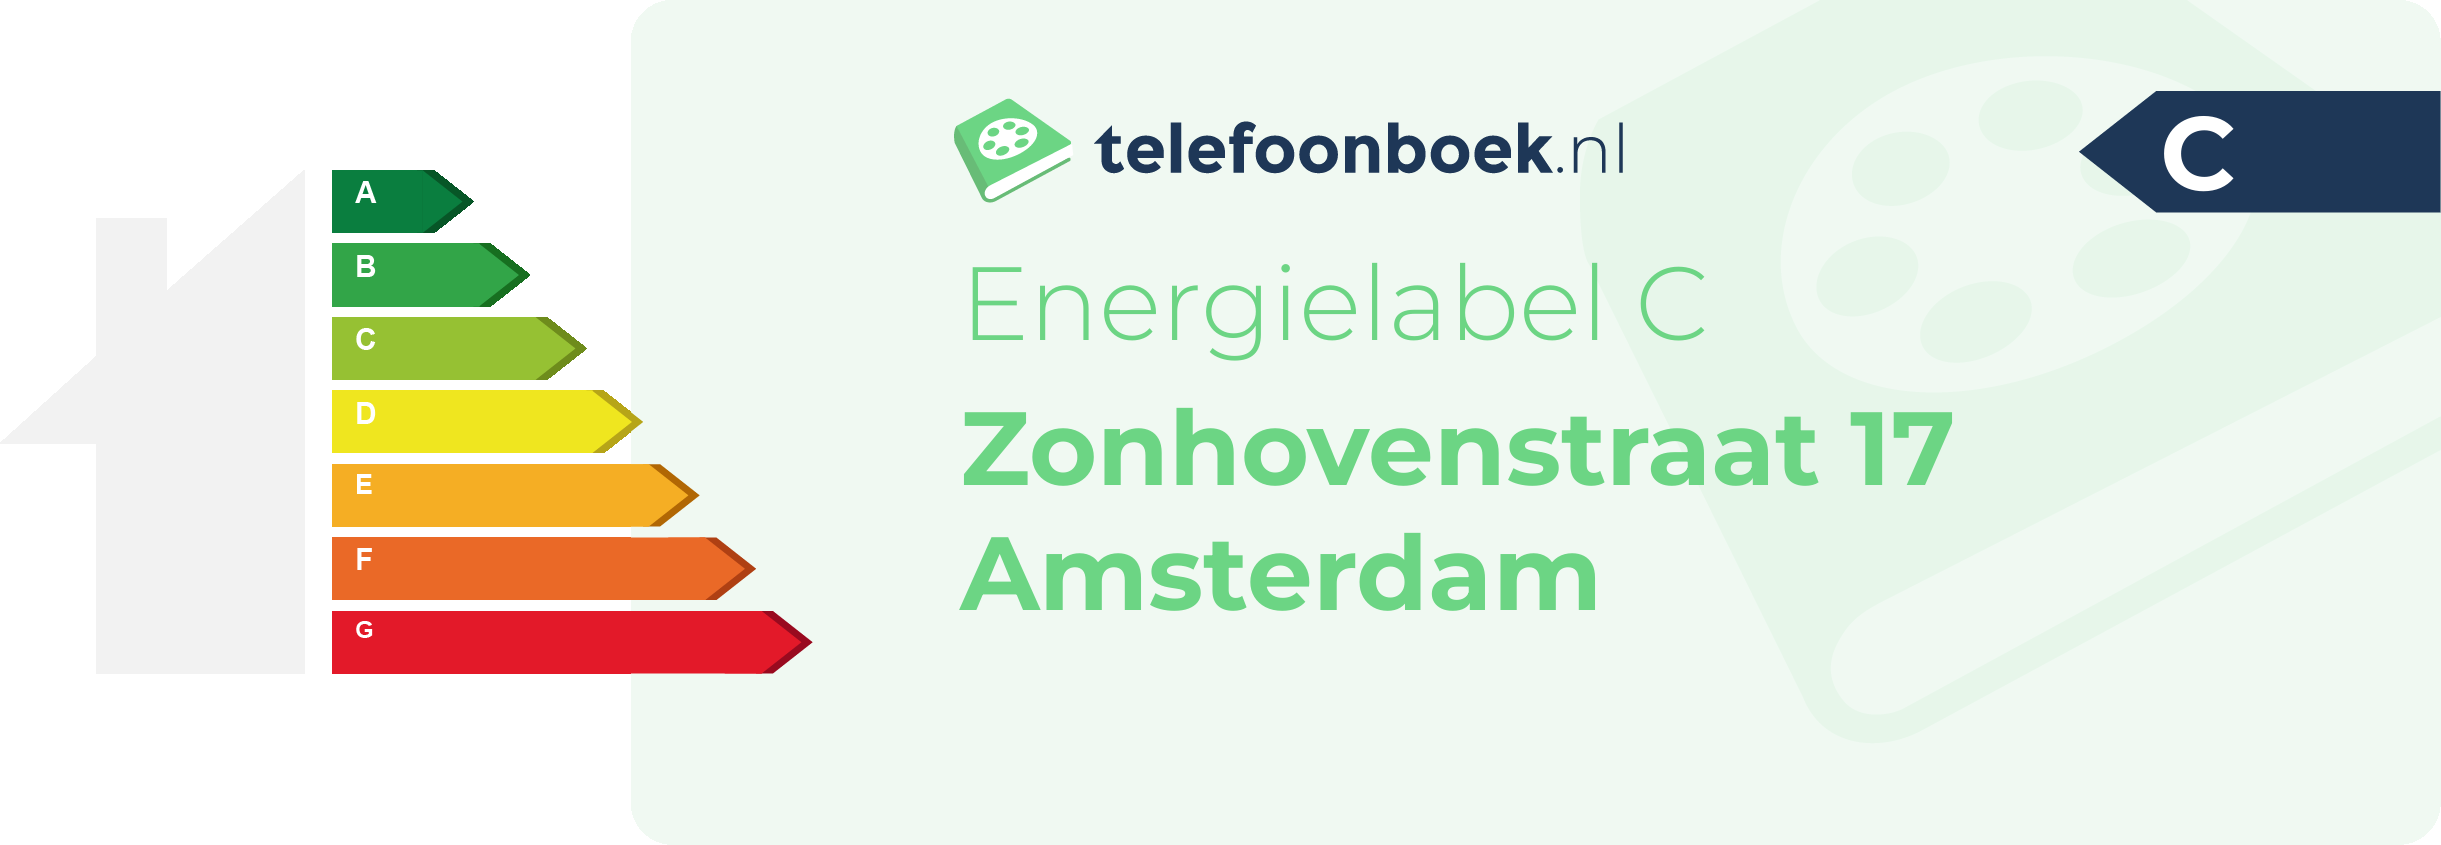 Energielabel Zonhovenstraat 17 Amsterdam